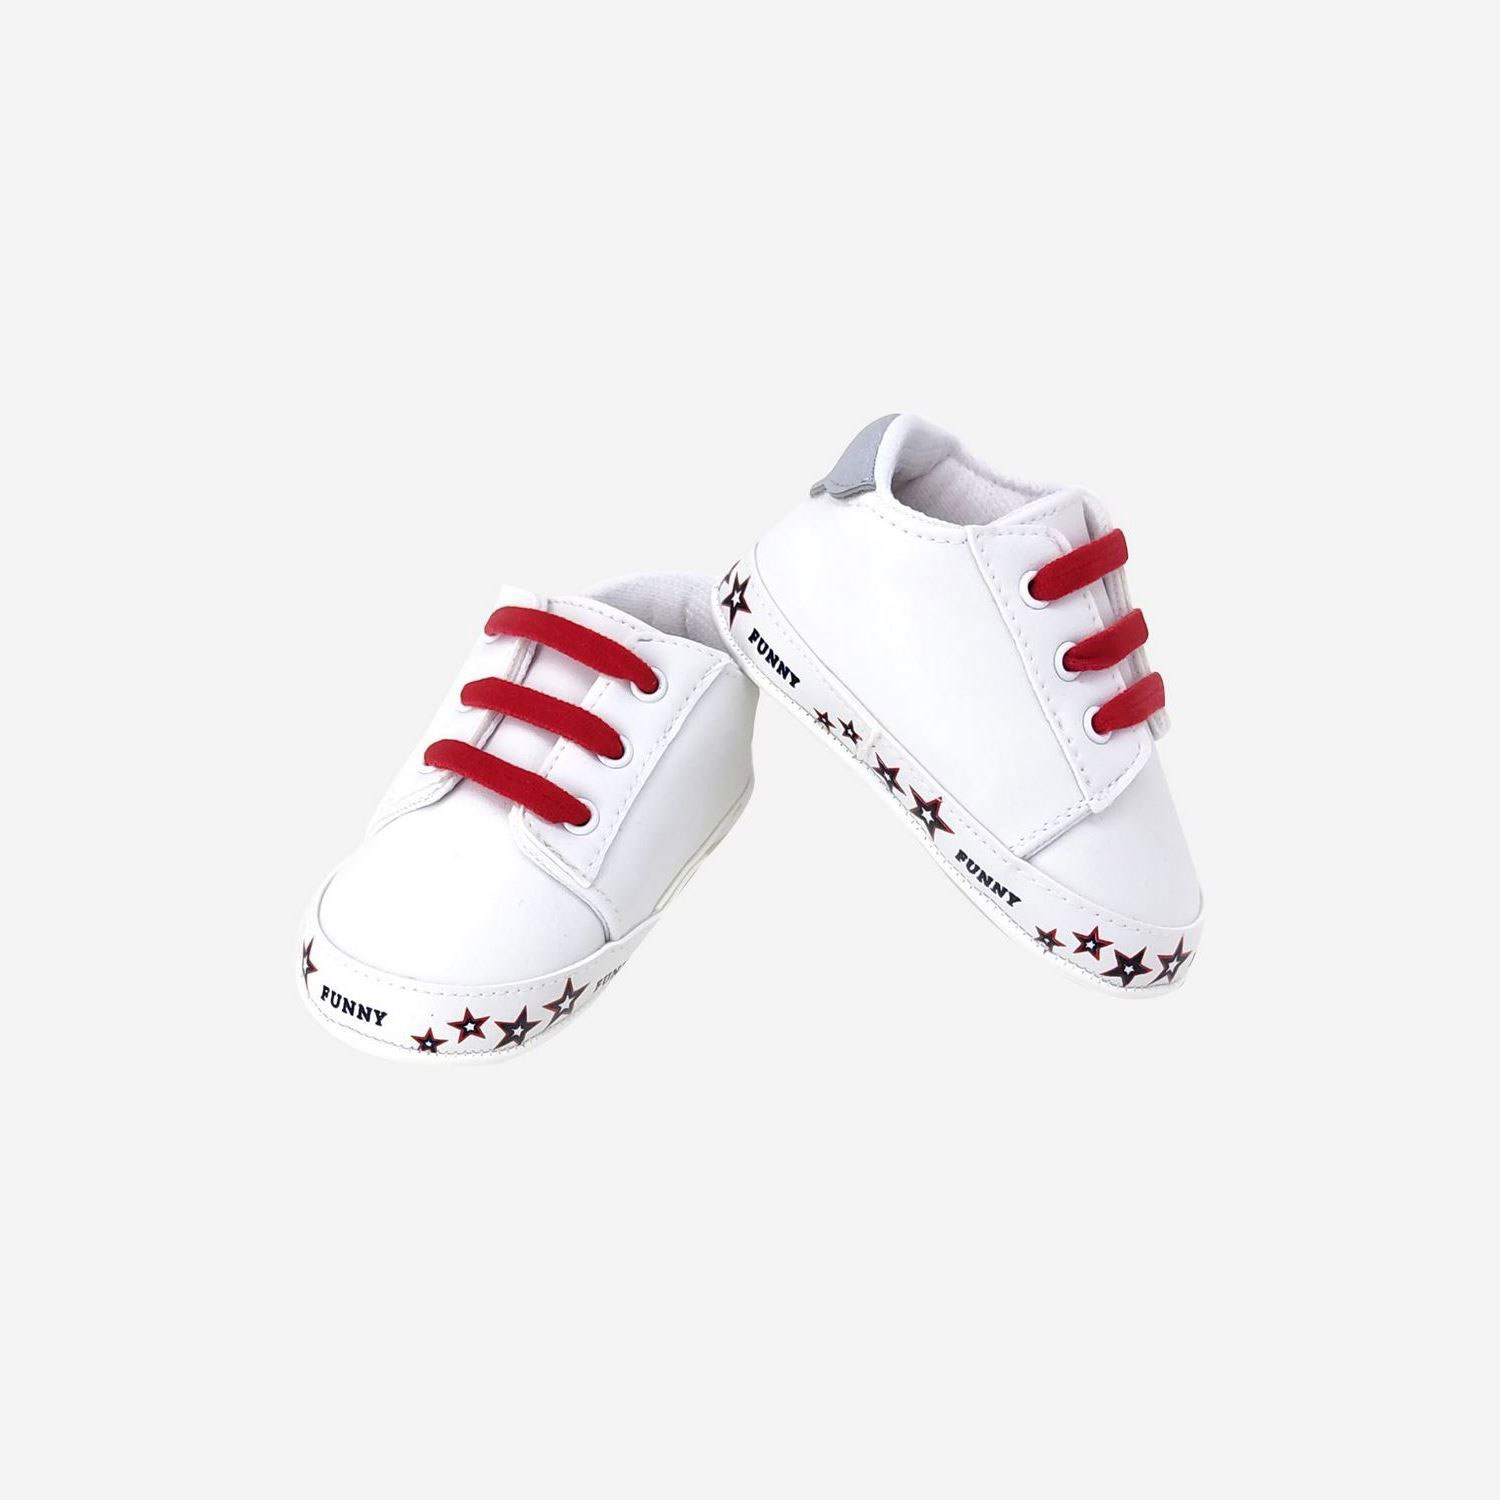 Funny Baby Premium Bebek Ayakkabası 7140 Kırmızı